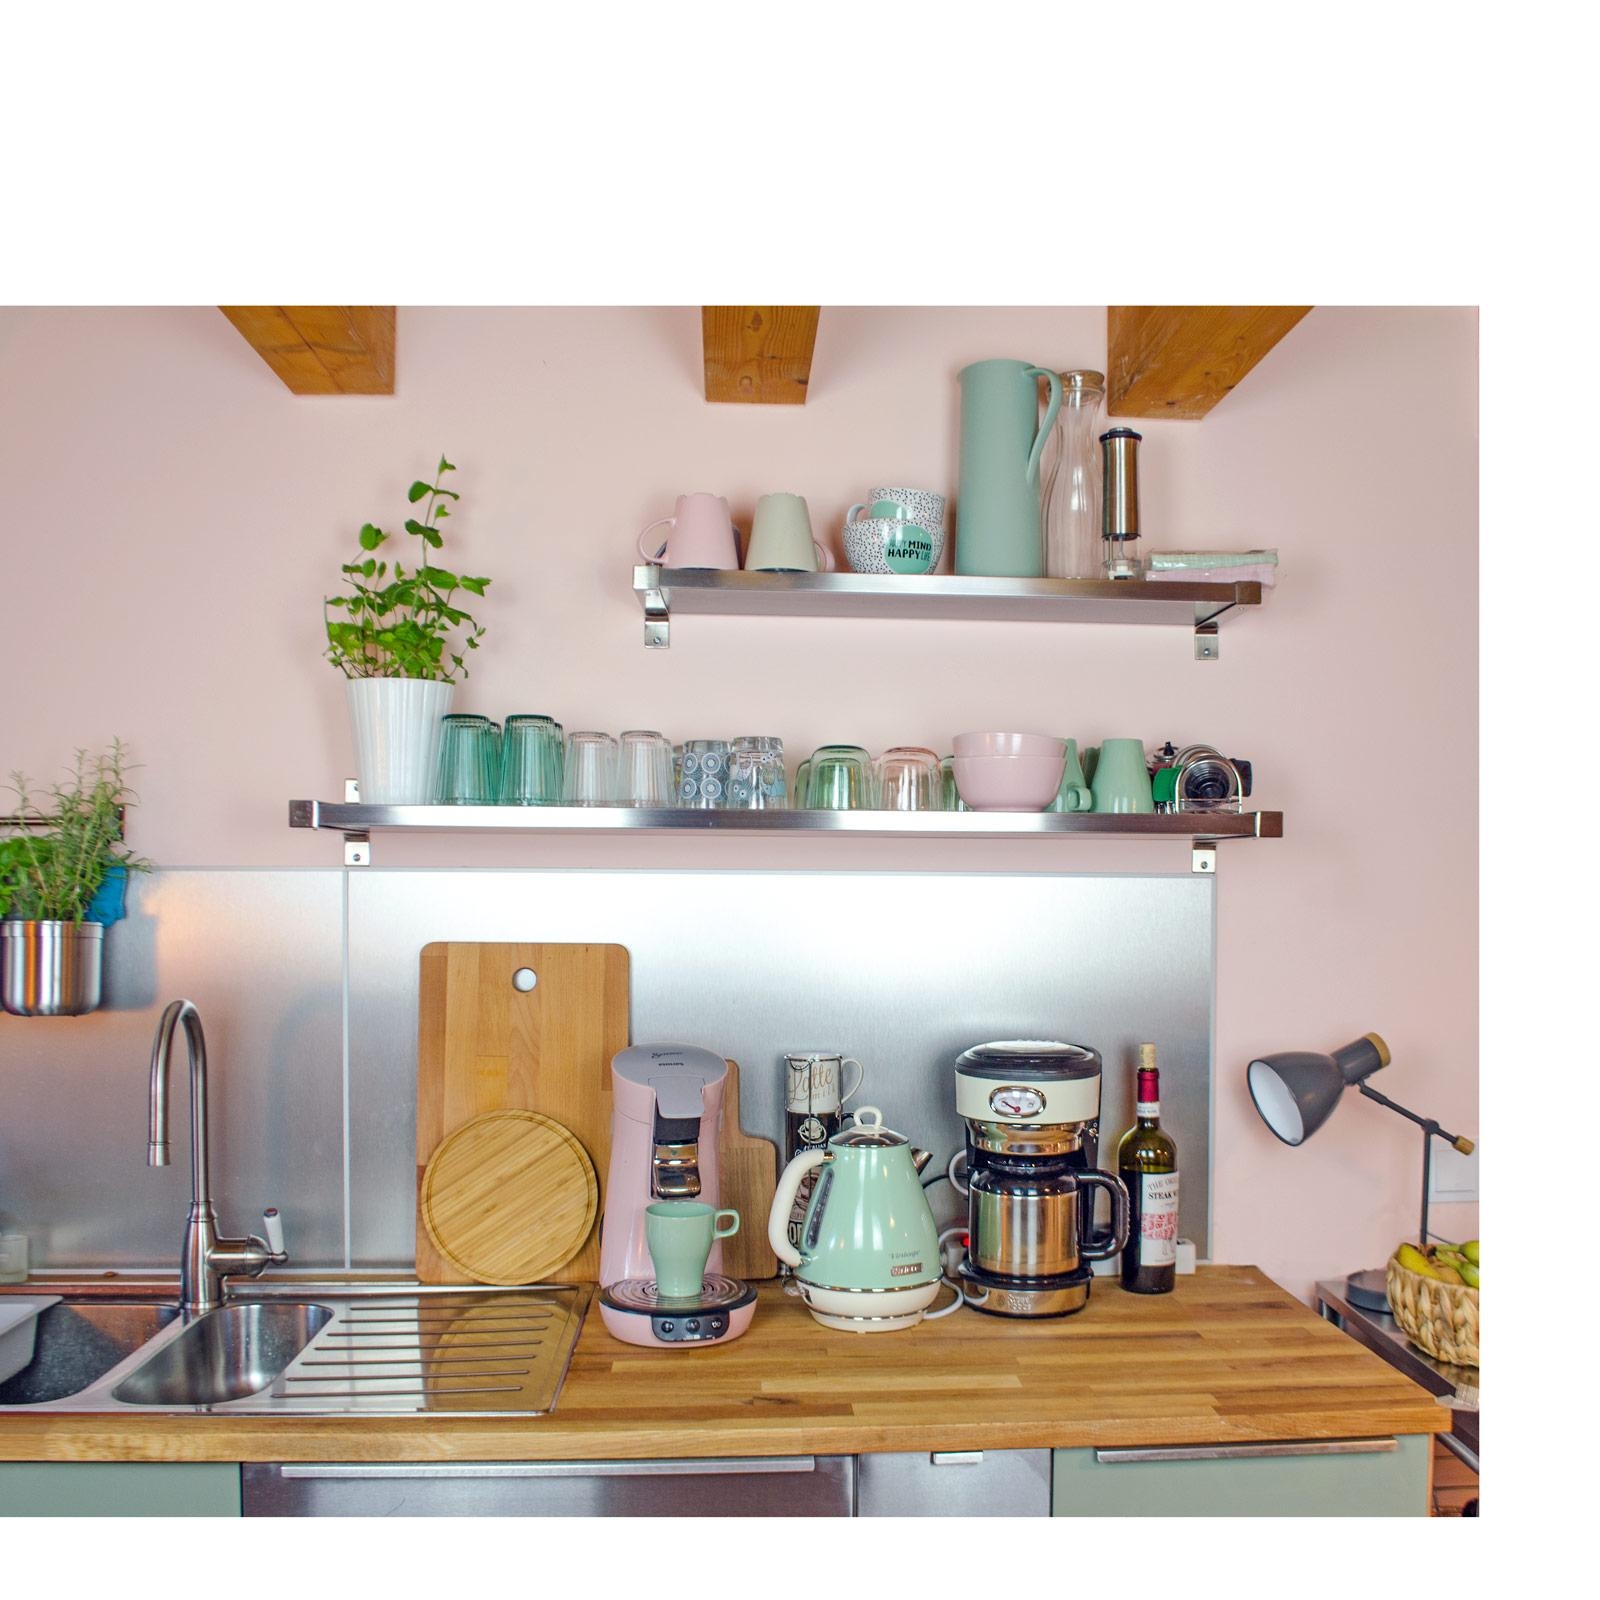 Meine Küchenregale statt Oberschränke. #Küche #vintage #kitchen #shelf #scandi #boho #interior #rosa #retro #ikeaküche